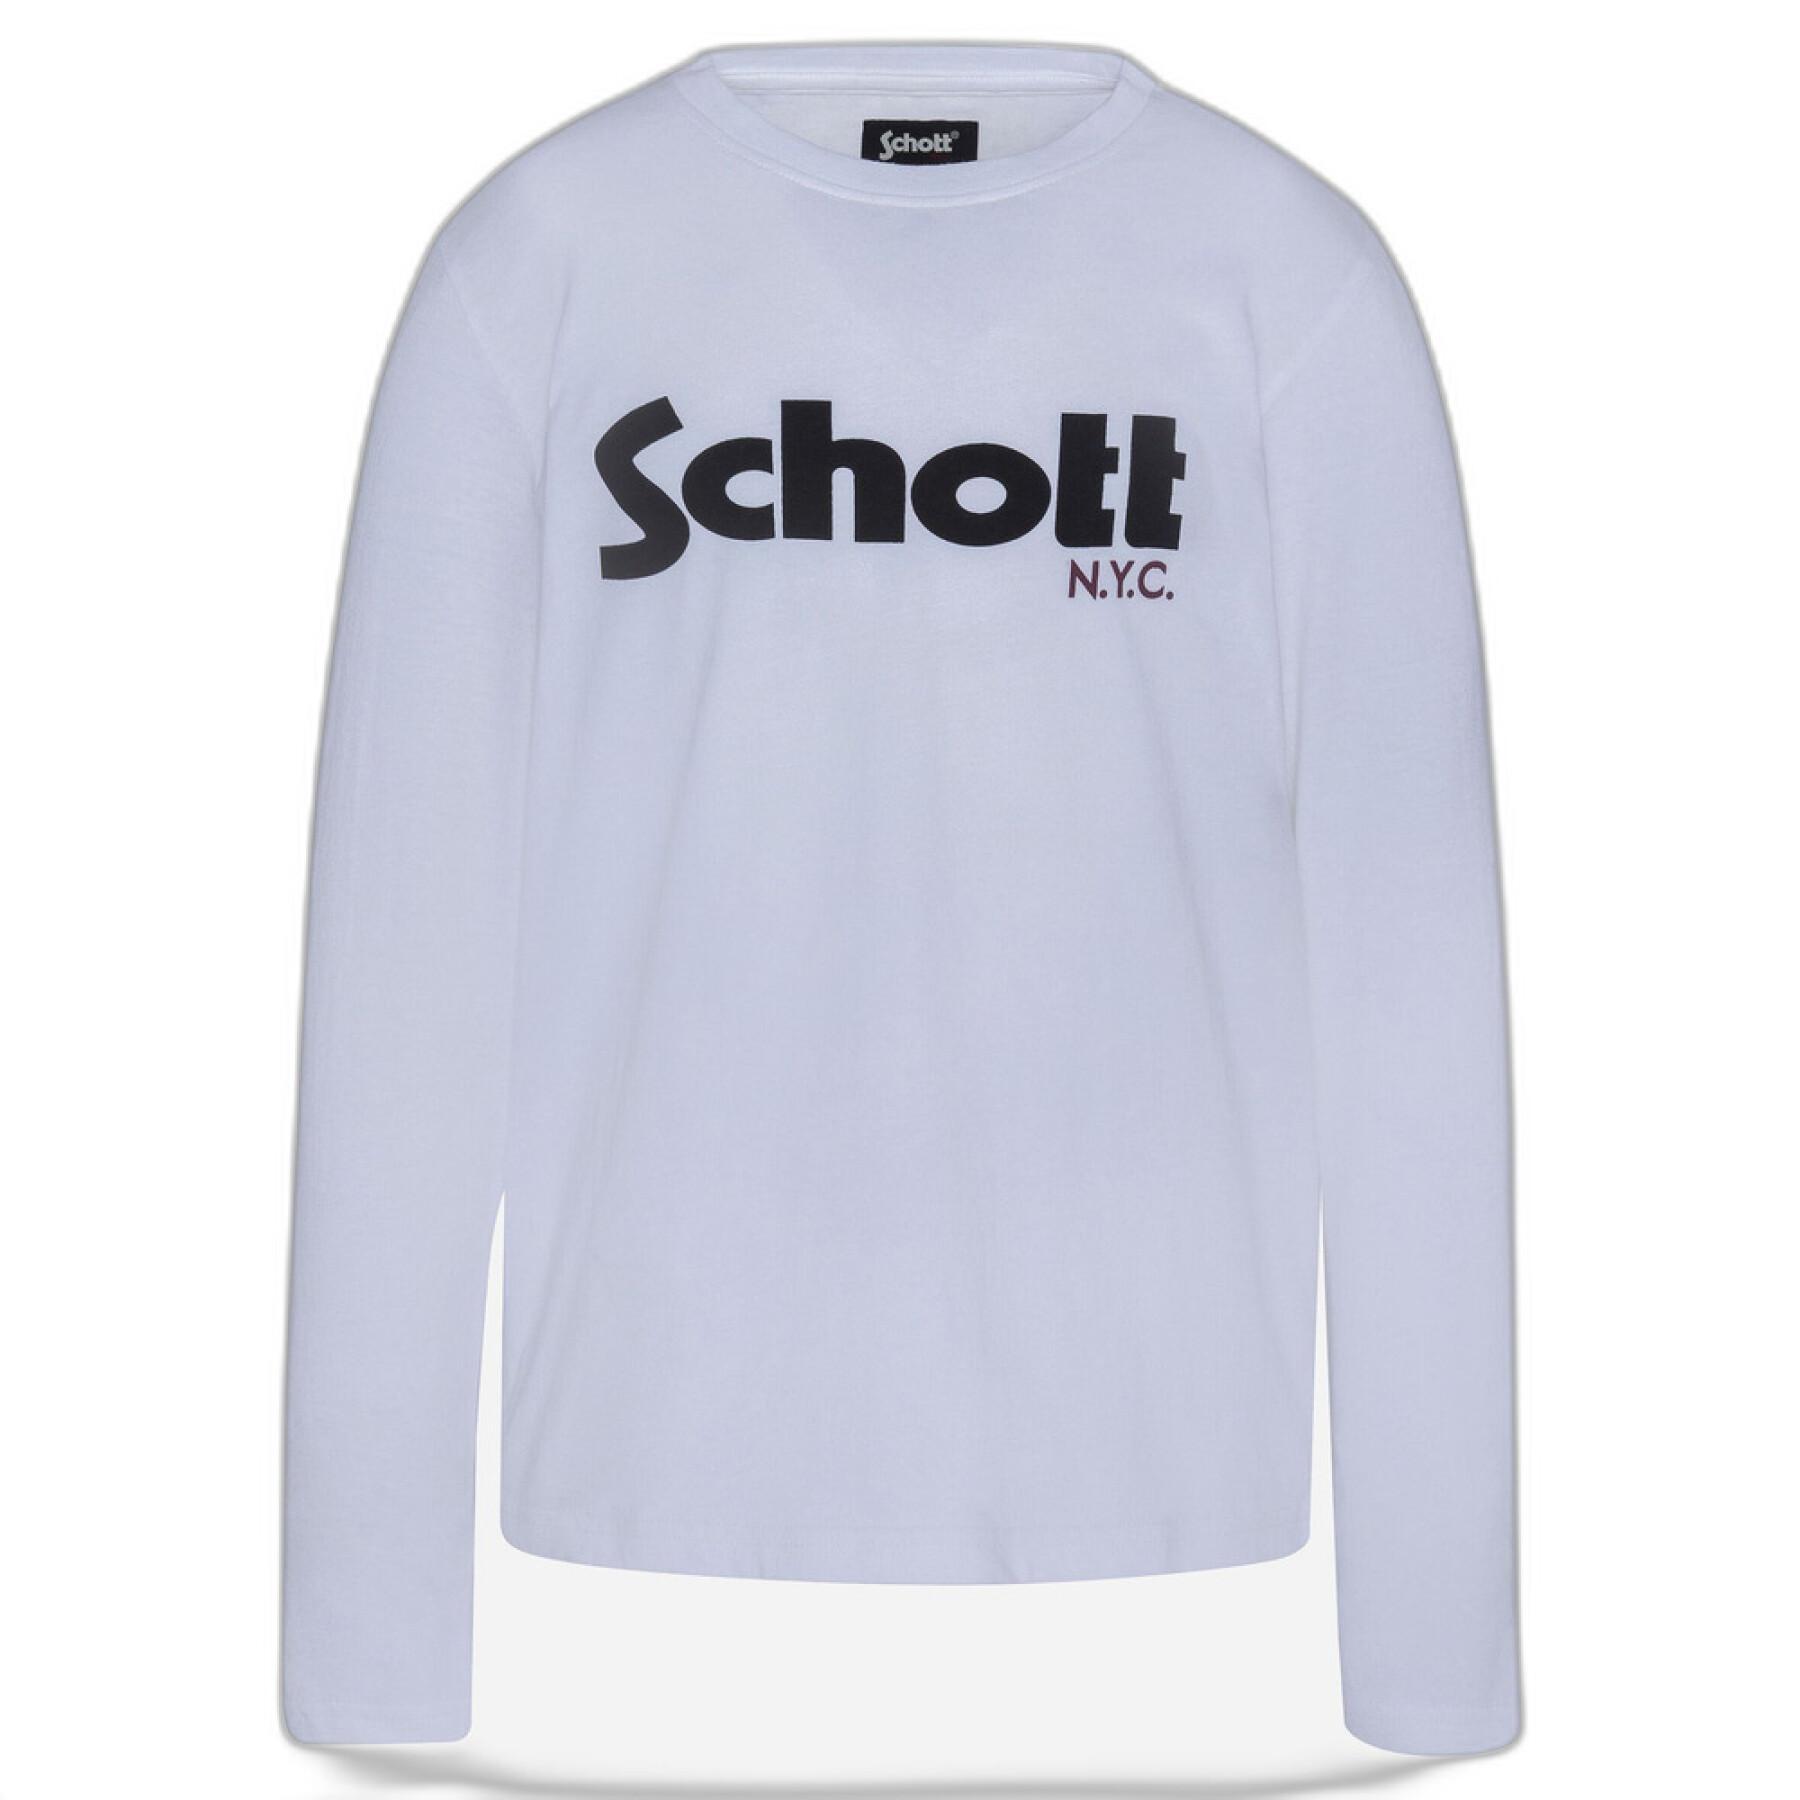 Maglietta a maniche lunghe per bambini Schott